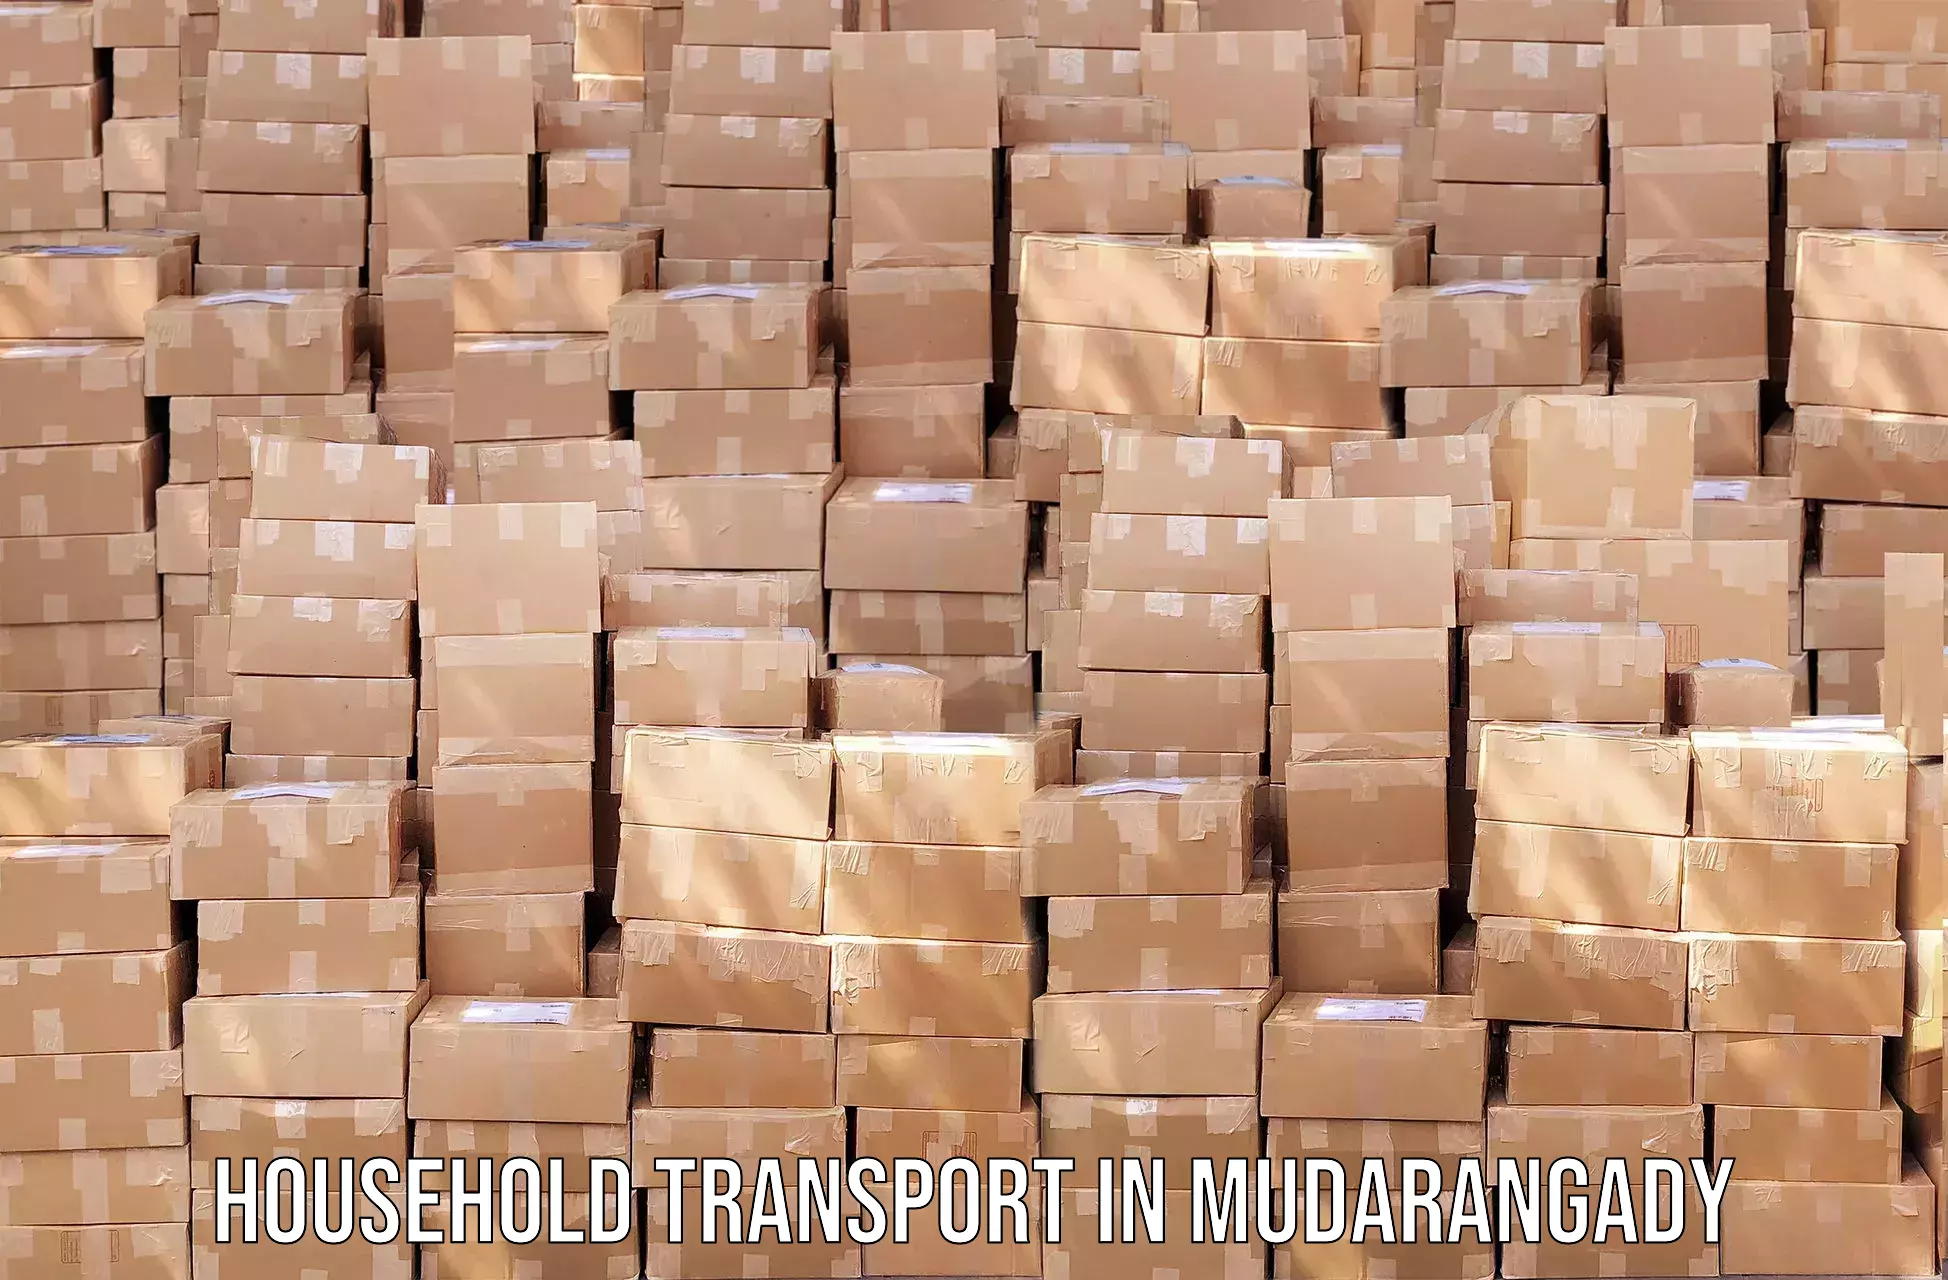 Full-service furniture transport in Mudarangady